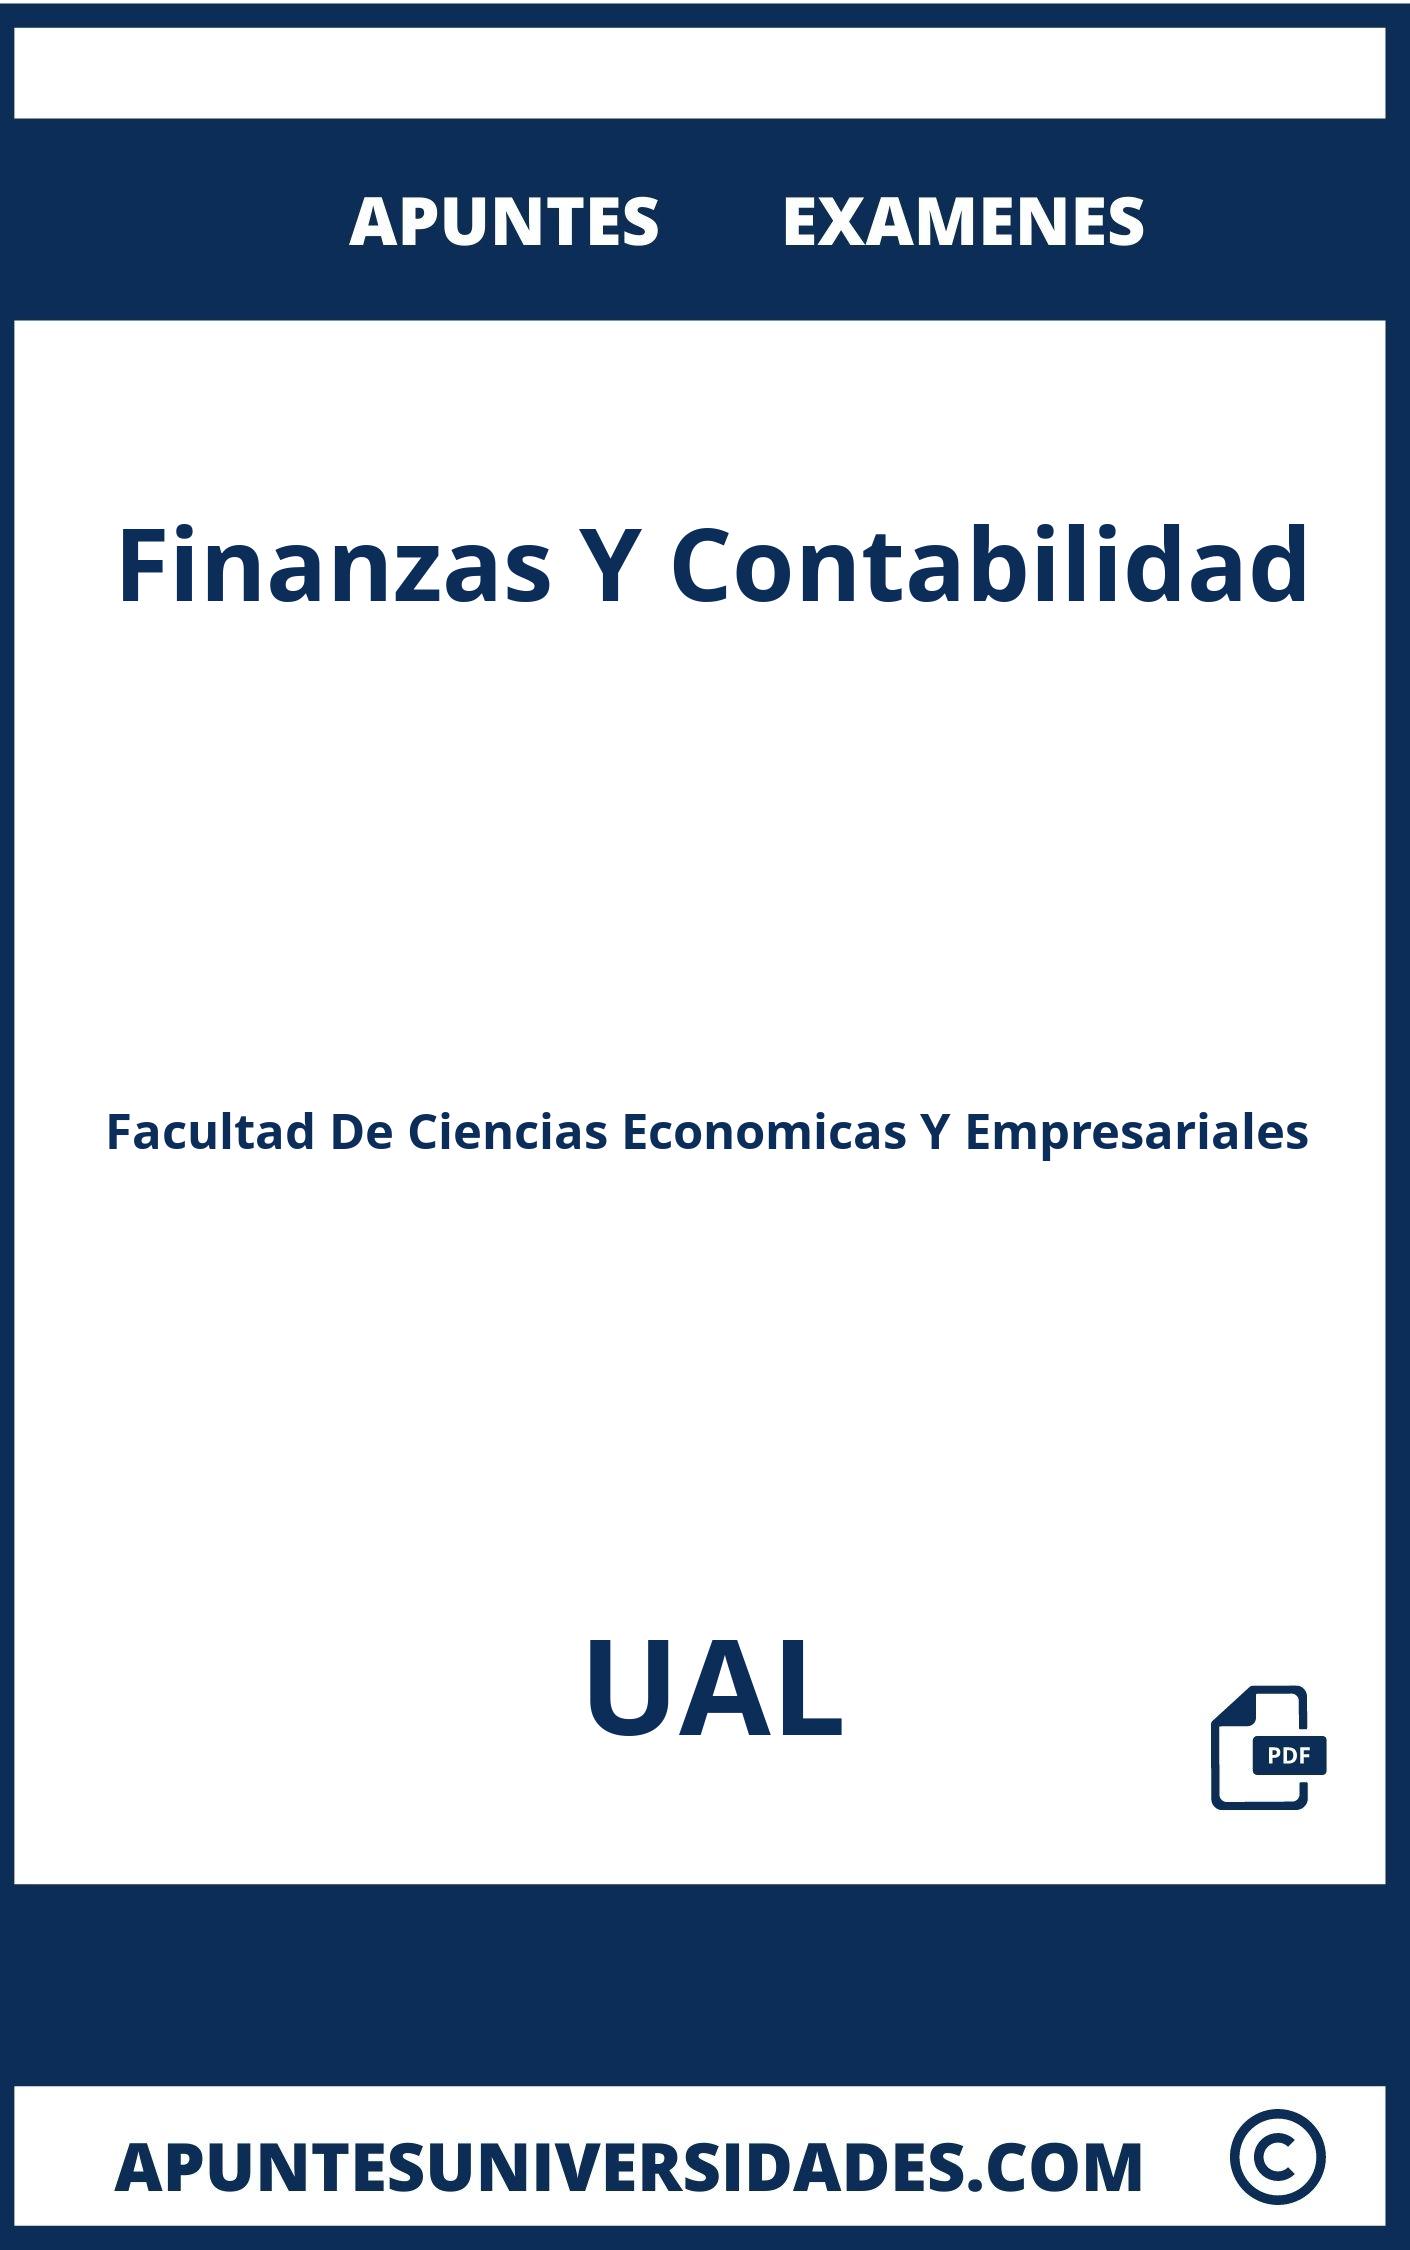 Apuntes Finanzas Y Contabilidad UAL y Examenes